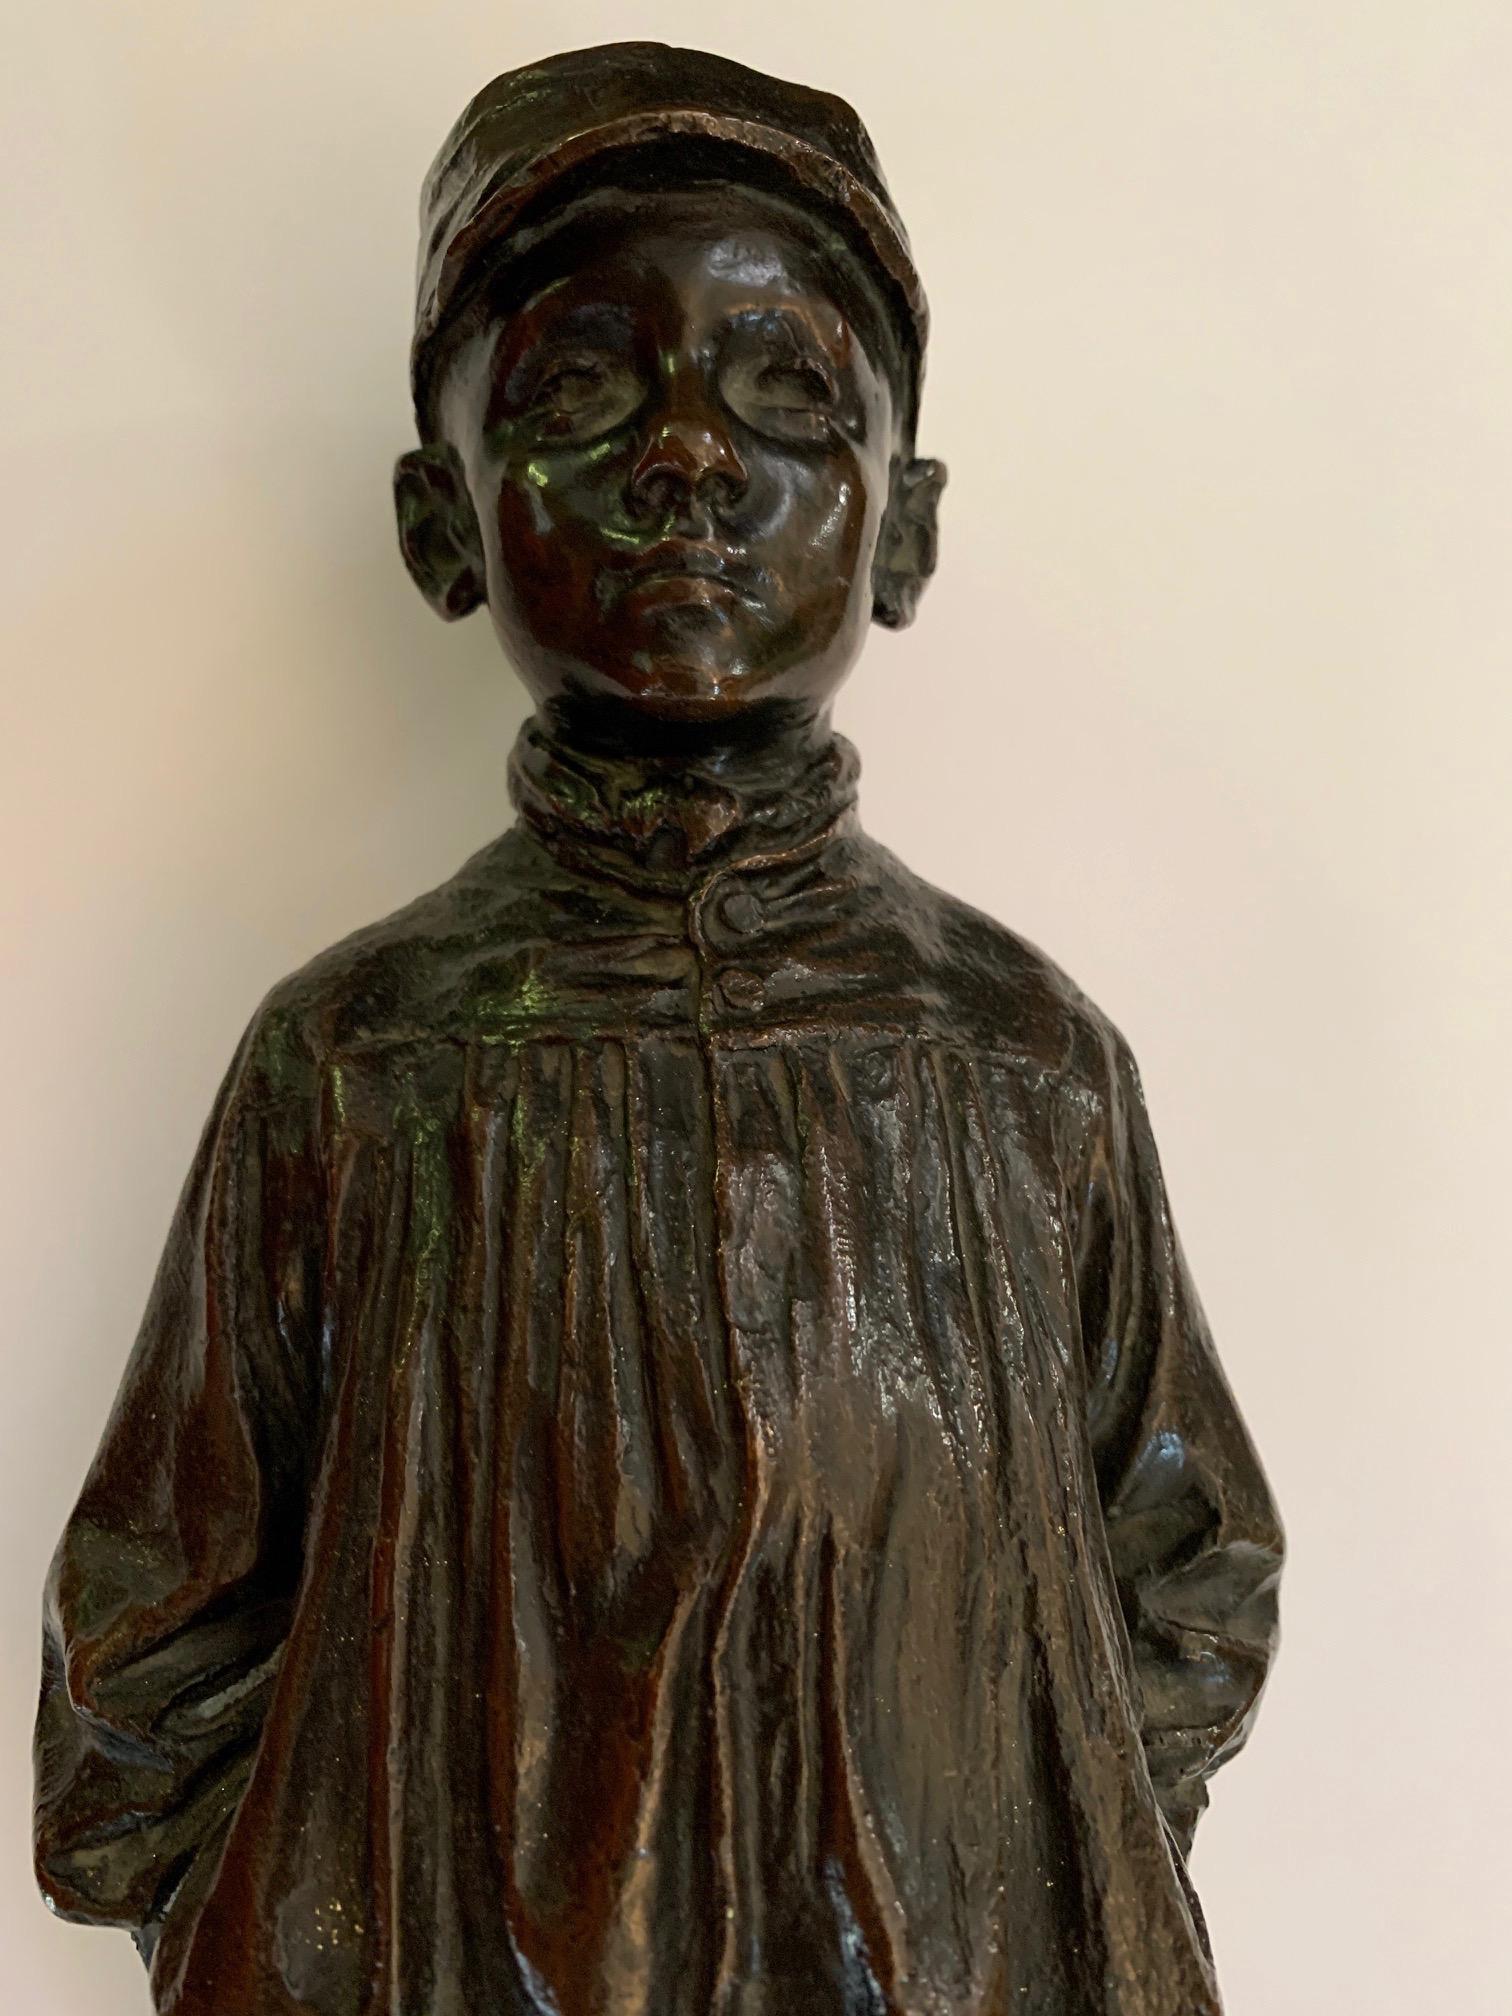 Spanische naturalistische Bronzeskulptur eines jungen Jungen aus dem 19. Jahrhundert aus Bronze – Sculpture von Julio Marti